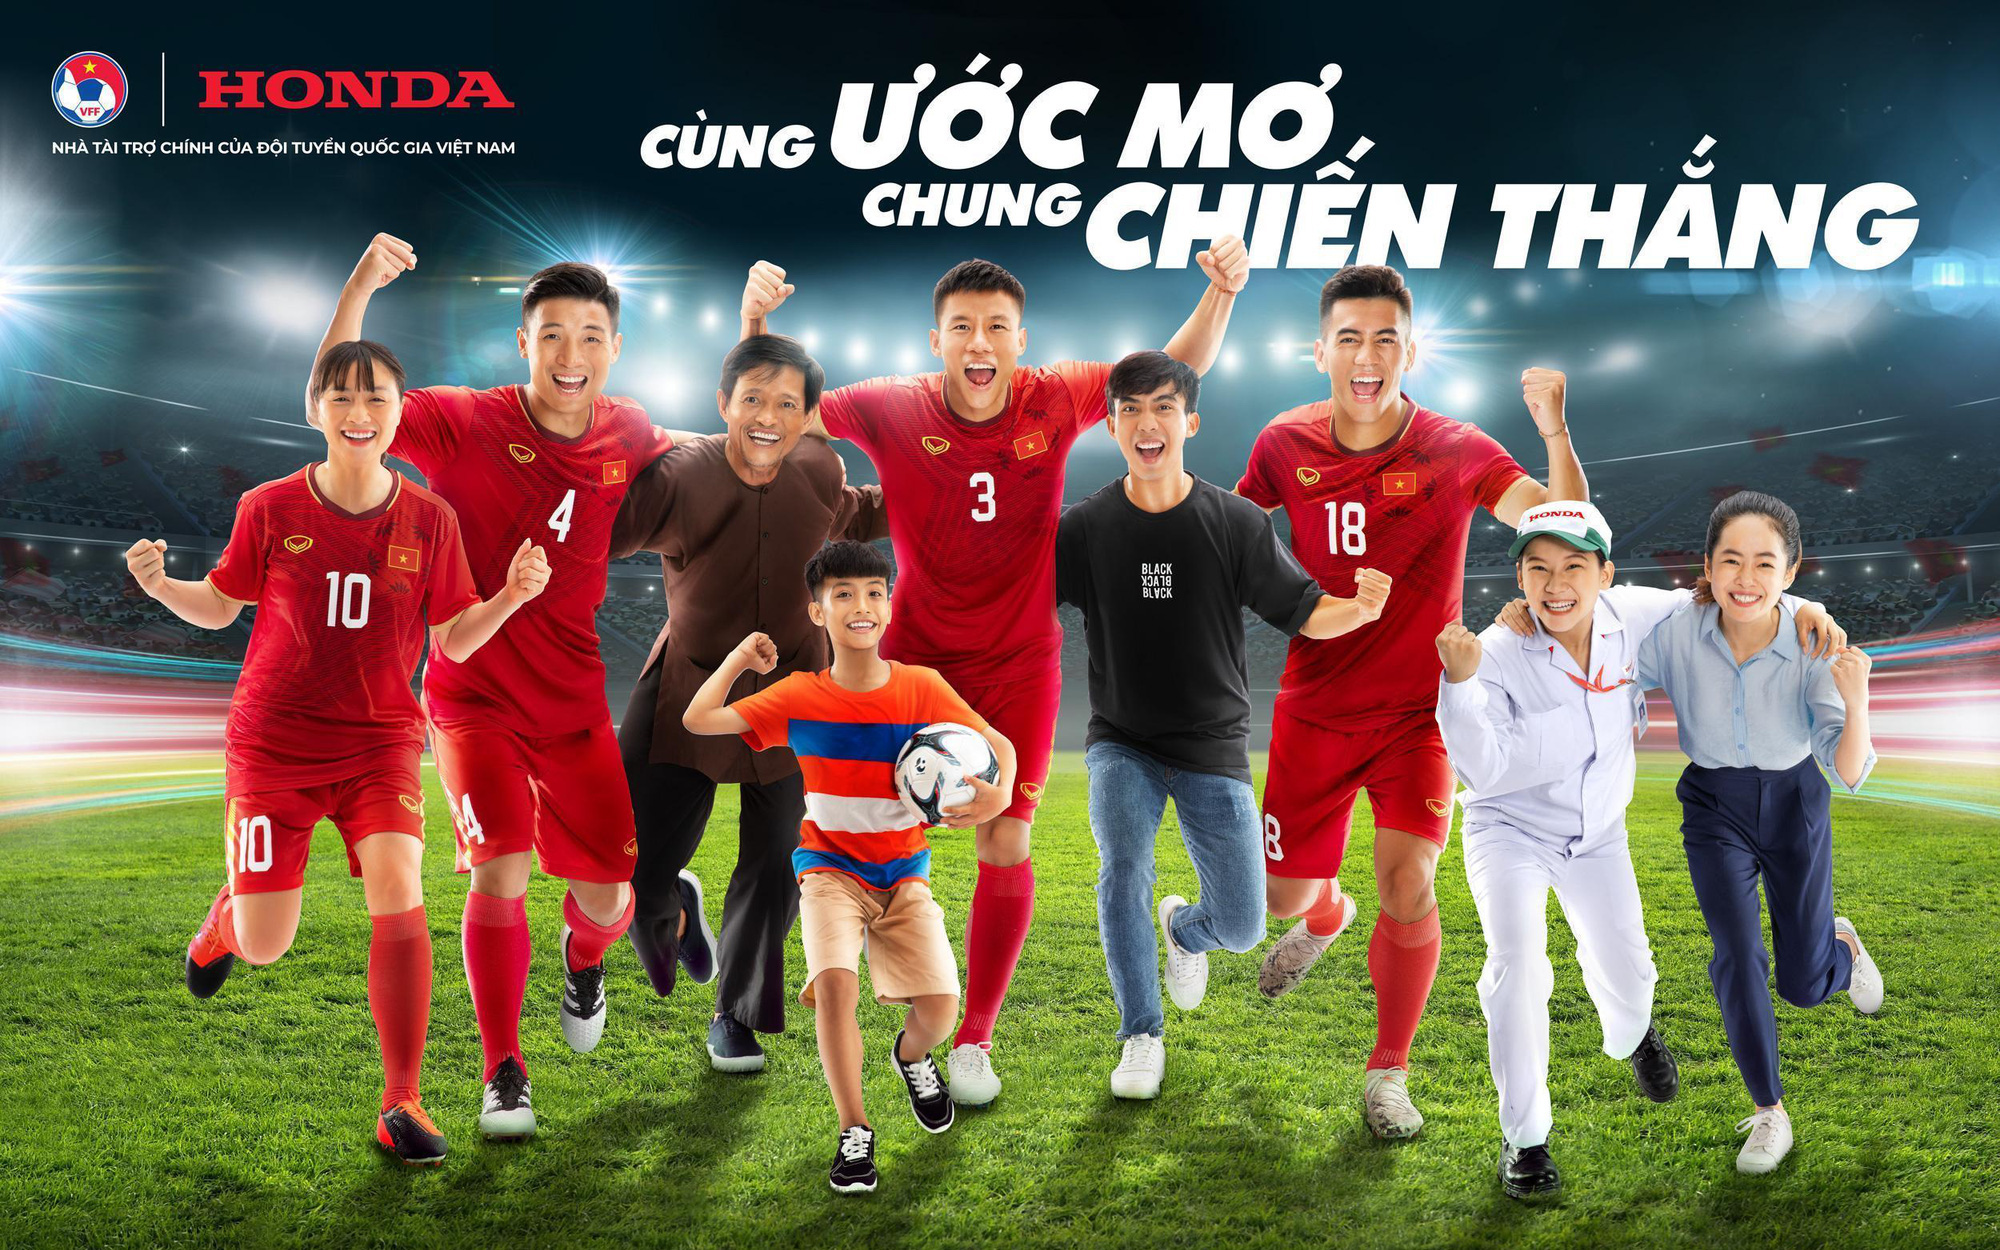 Honda Việt Nam tiếp tục đồng hành cùng nền bóng đá nước nhà